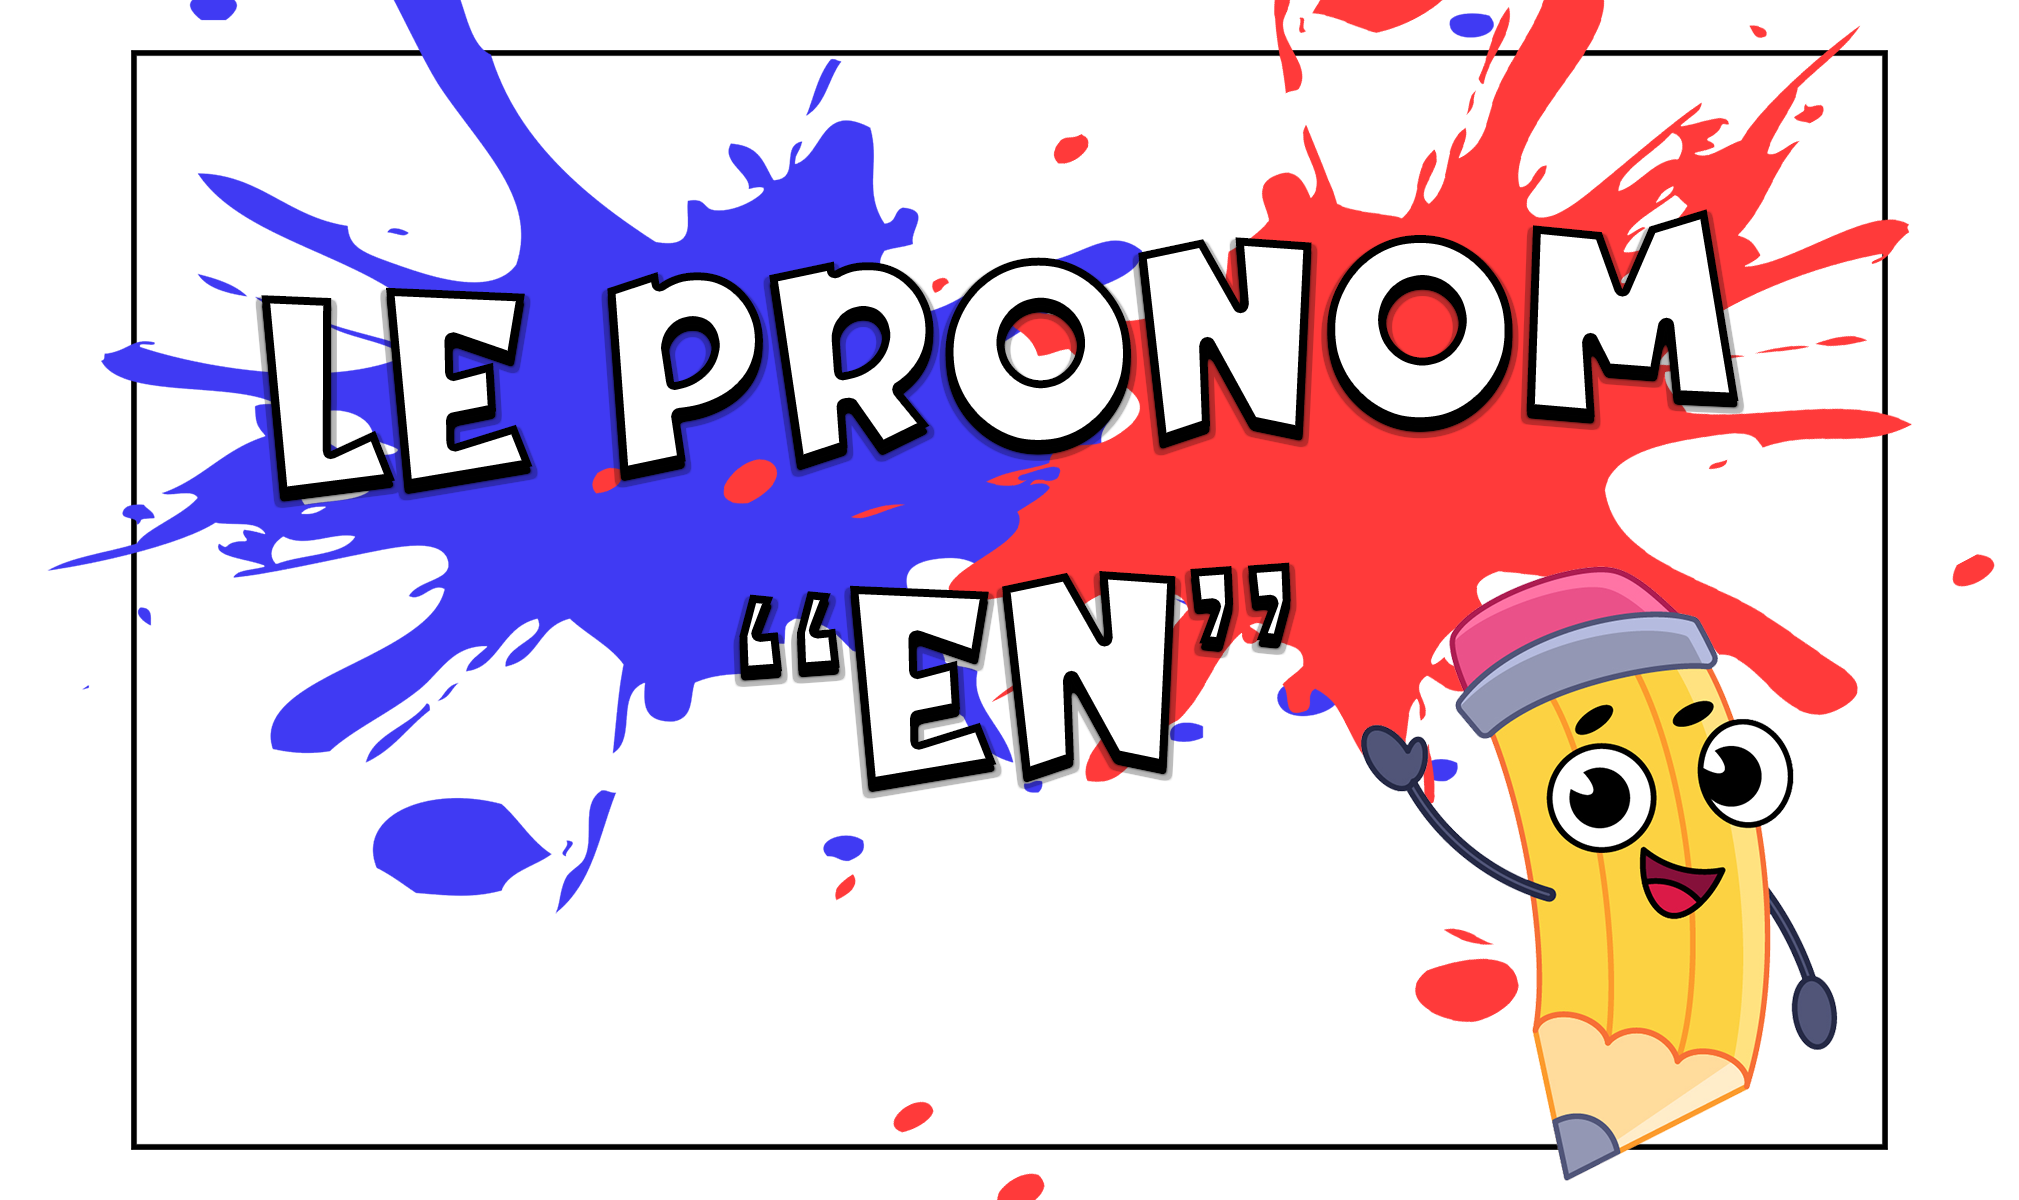 El pronombre en en francés